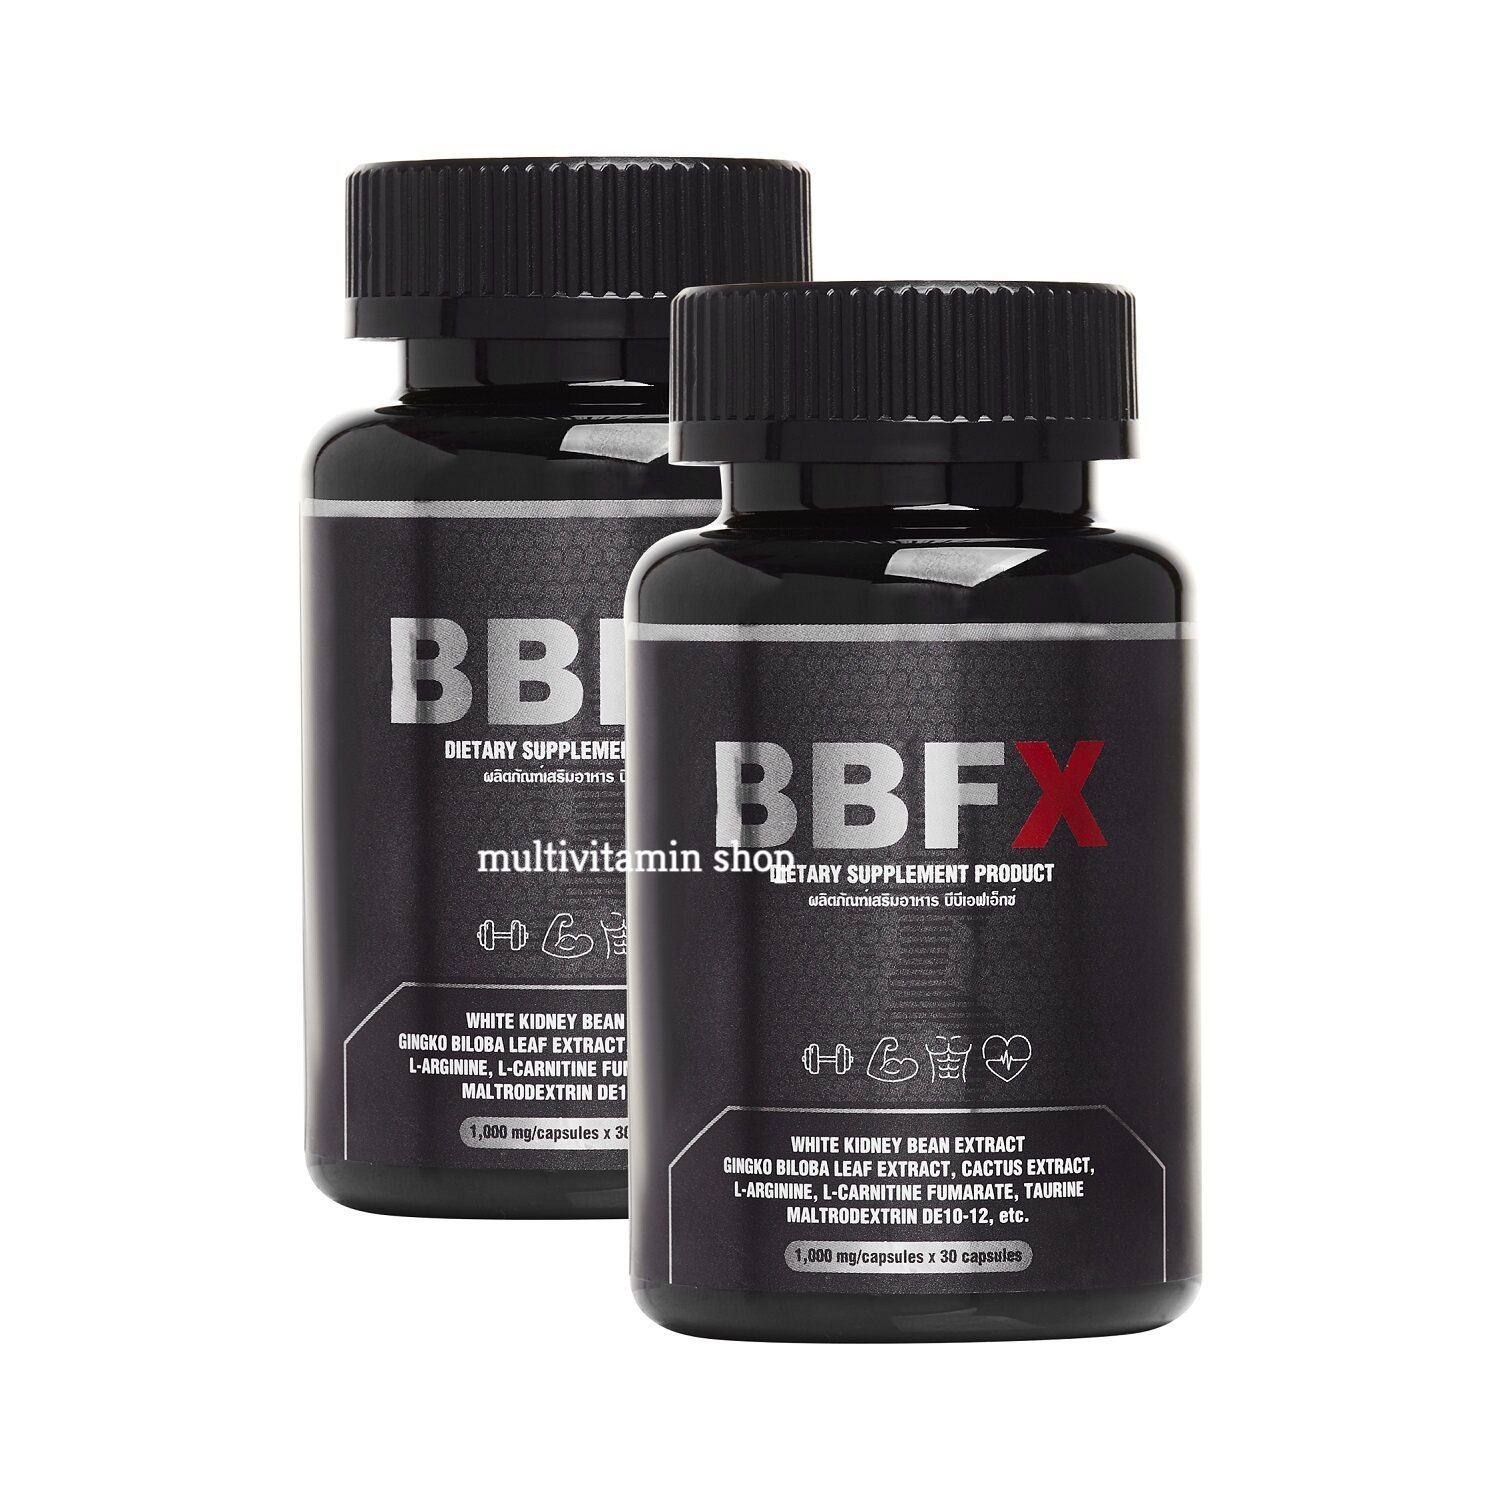 BBFX อาหารเสริมเผาผลาญไขมัน อาหารเสริมเร่งเผาผลาญไขมัน อาหารเสริมช่วยเผาผลาญ อาหารเสริมเบิร์นไขมัน วิตามินเผาผลาญไขมัน 2 กระปุก